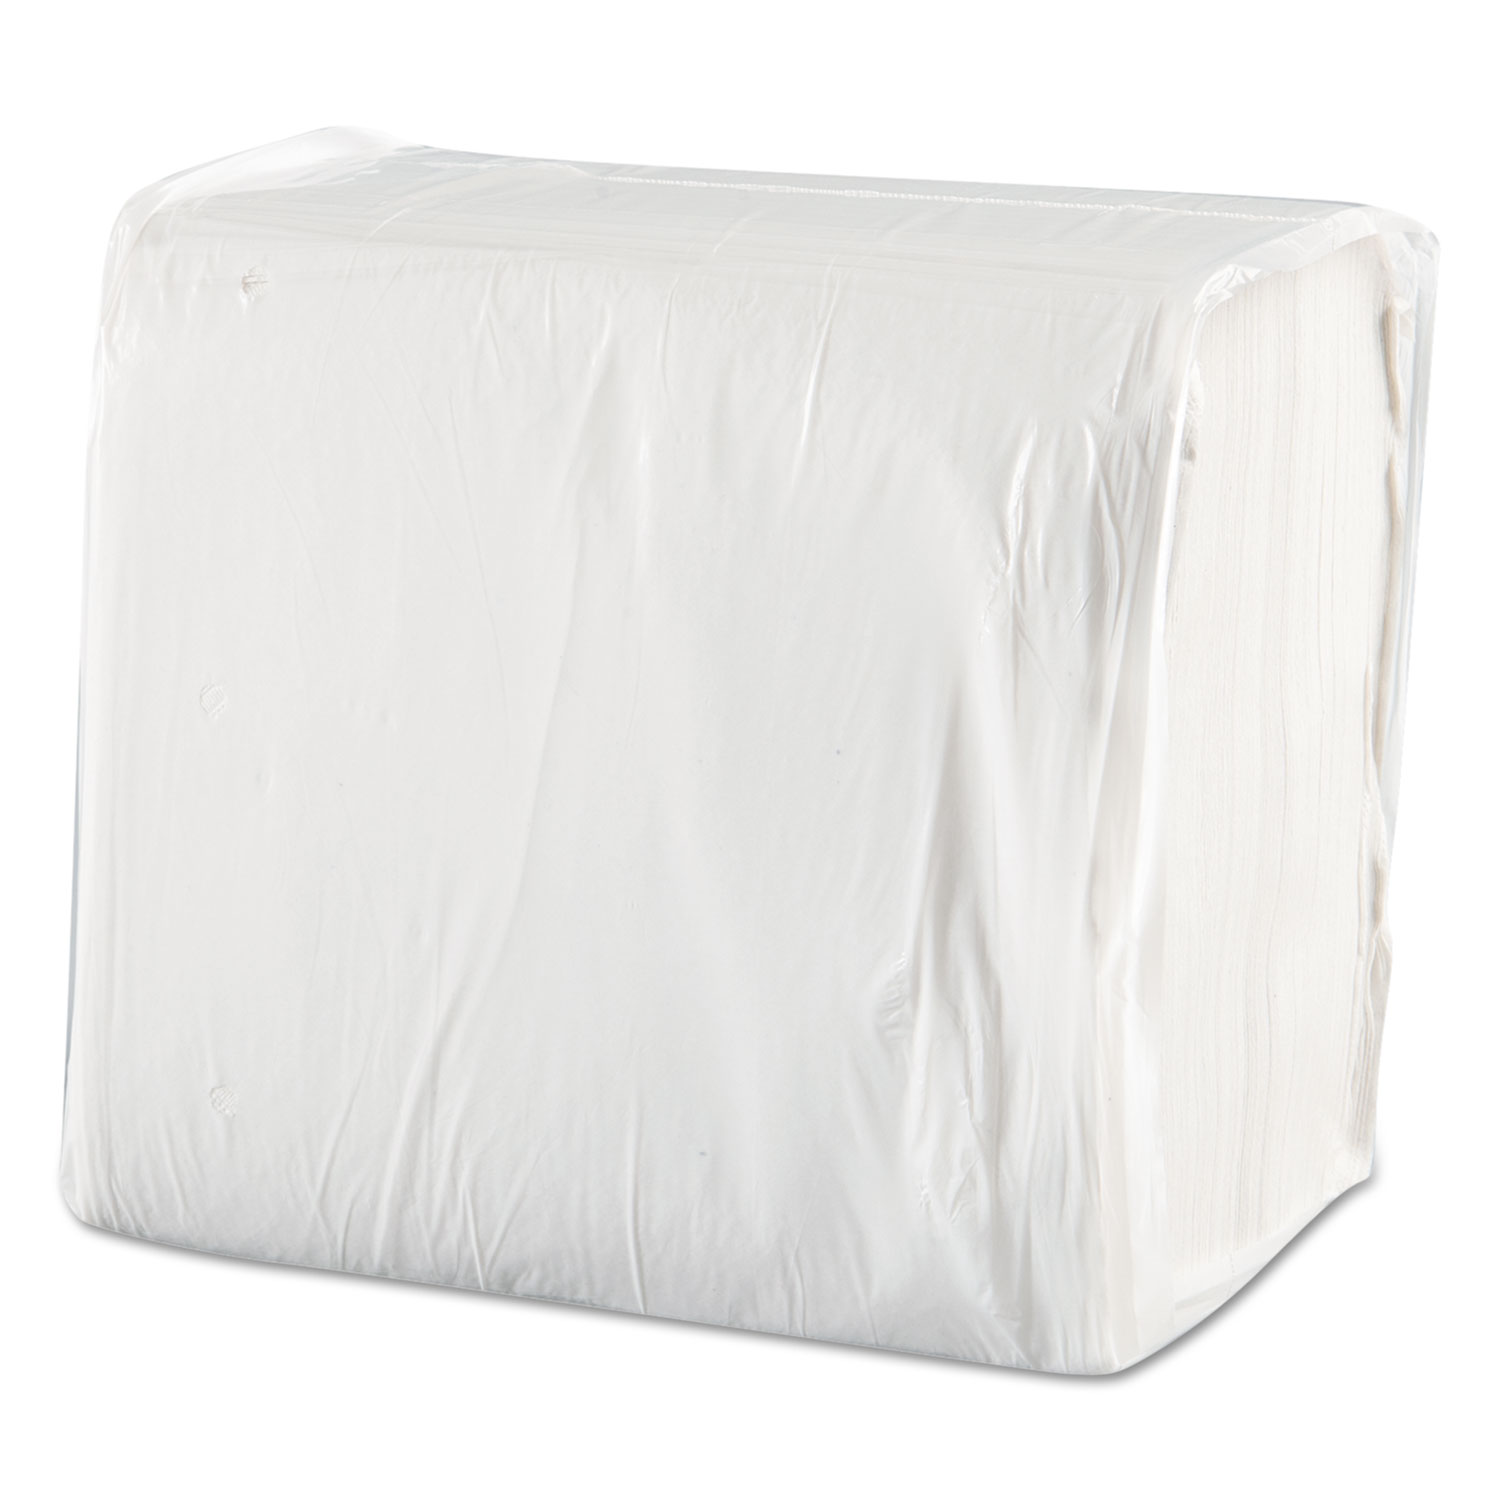  Morcon Tissue MOR 1717 Morsoft Dinner Napkins, 1-Ply, 15 x 17, White, 250/Pack, 12 Packs/Carton (MOR1717) 